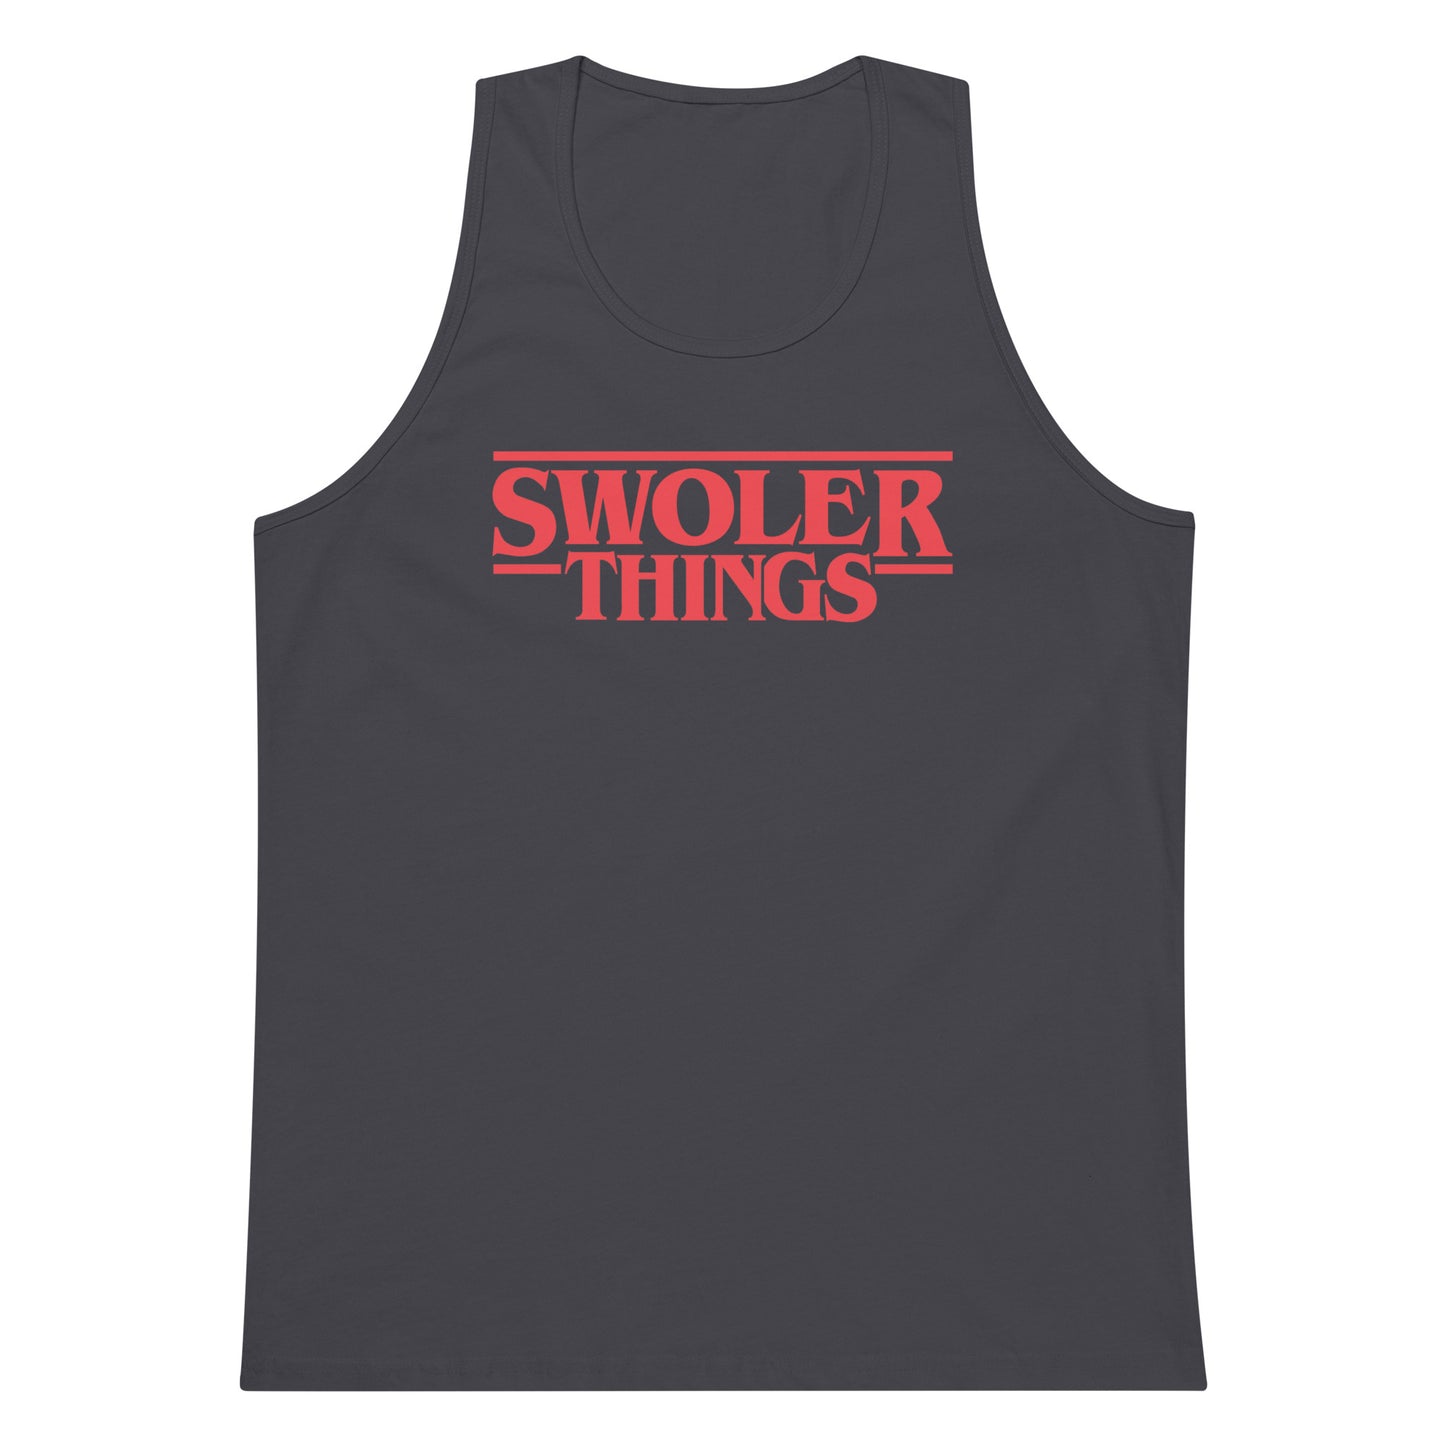 Swoler Things Men's Premium Tank Top